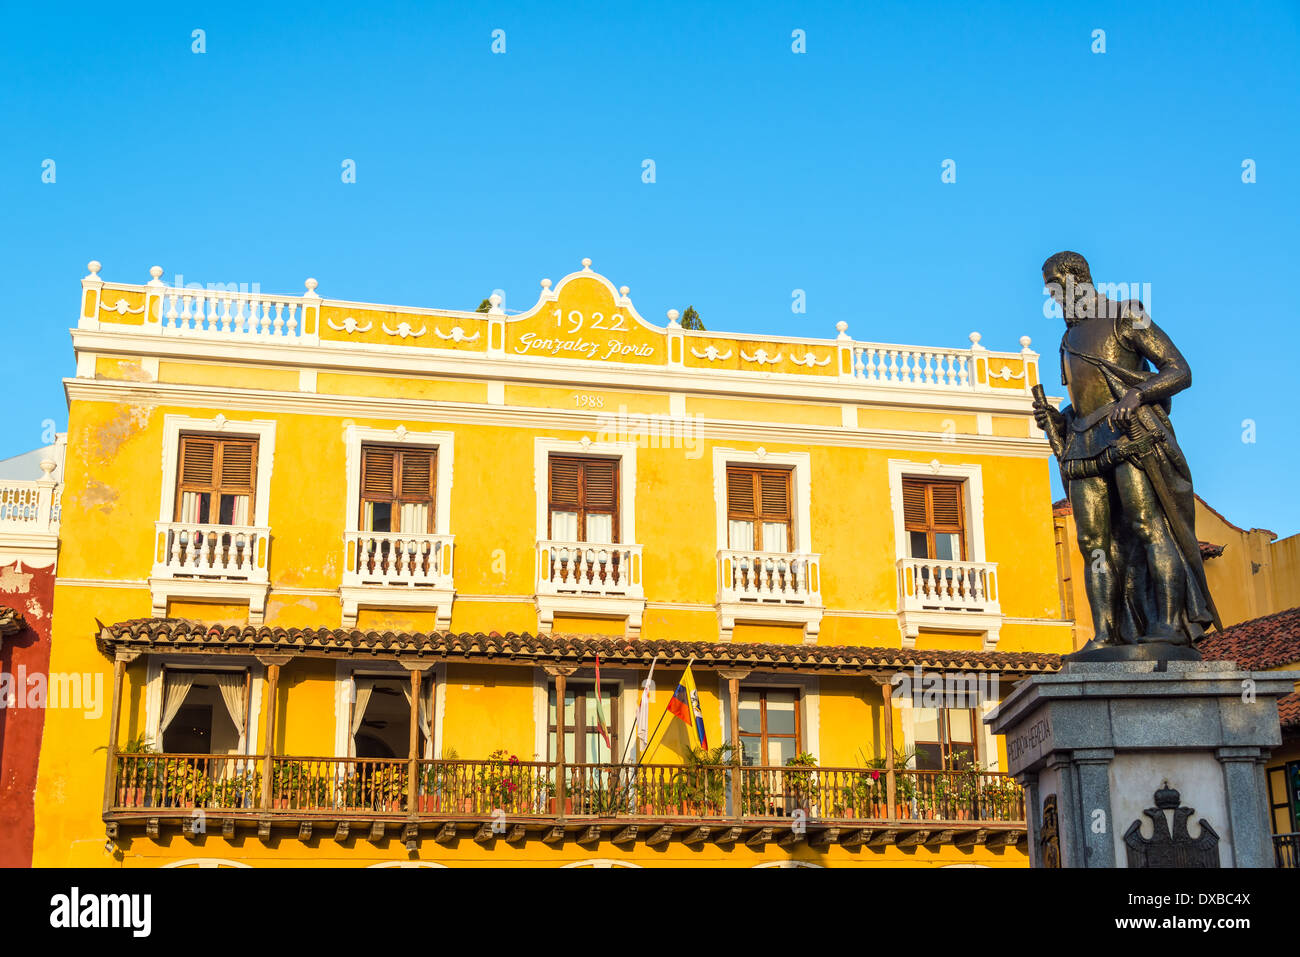 Bâtiment colonial jaune à Cartagena, en Colombie avec une statue de Pedro de Heredia, le fondateur de la ville Banque D'Images